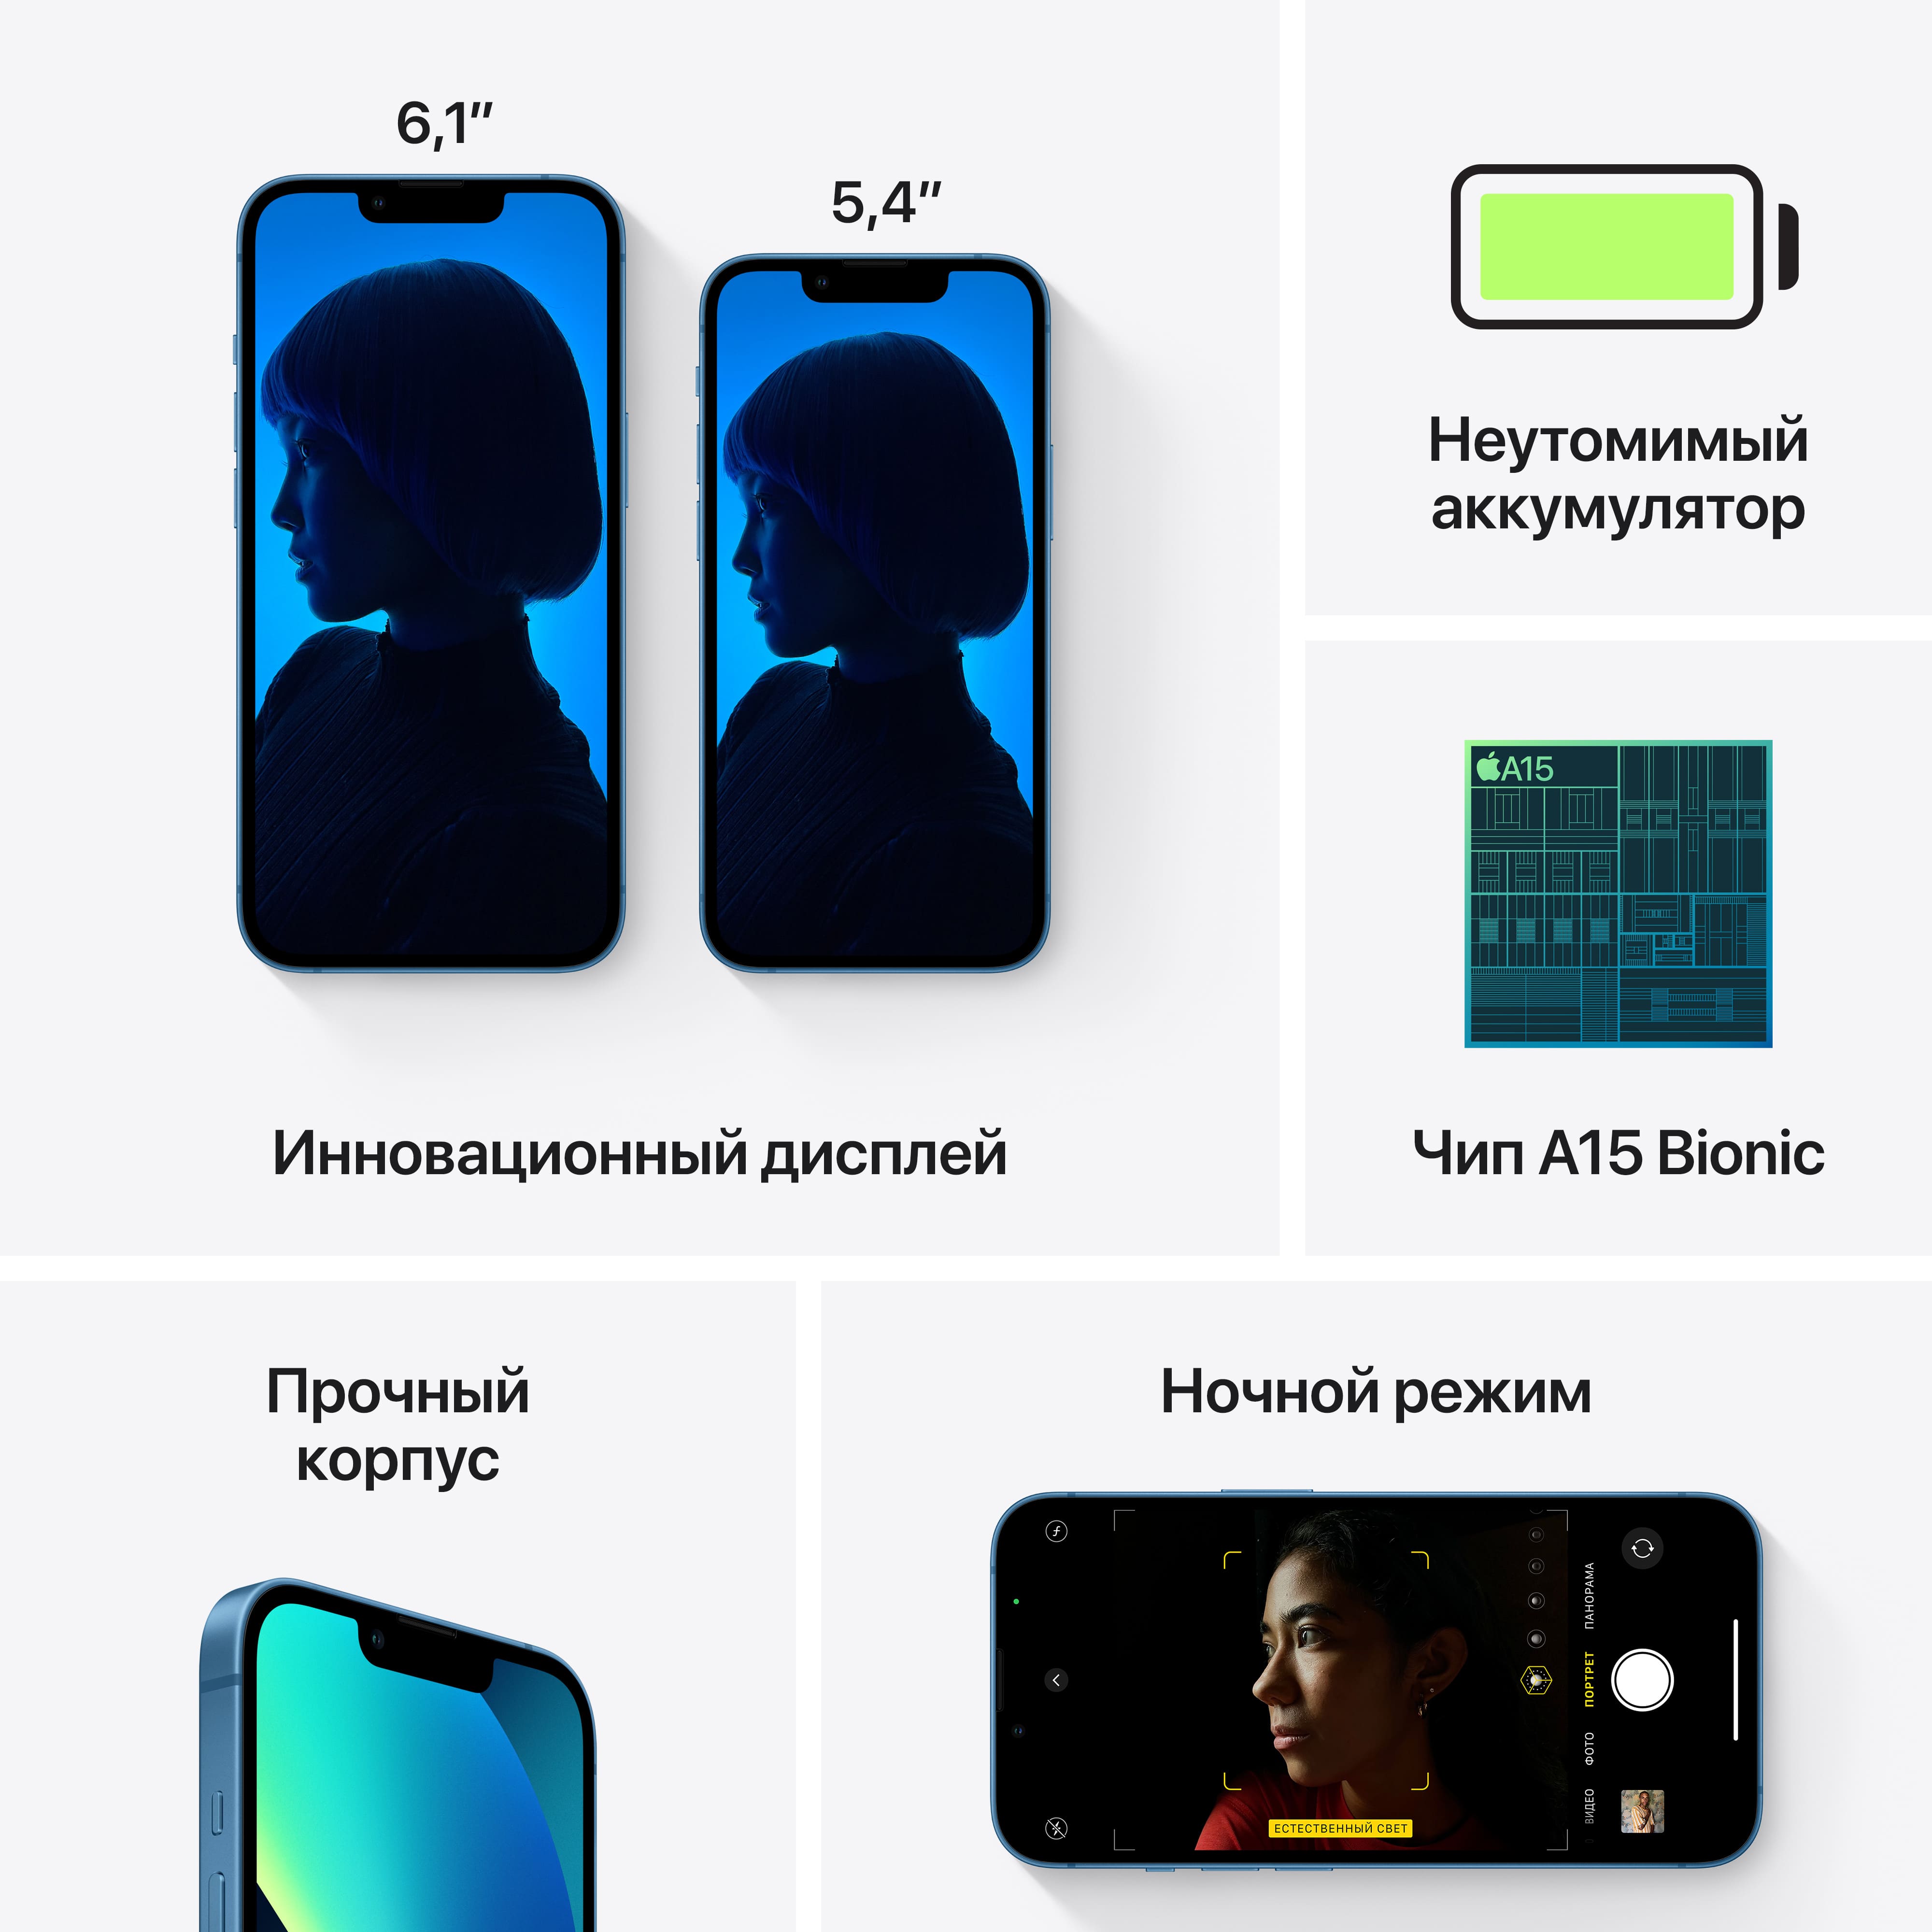 Купить iPhone 13 mini, 128 Гб, синий в Москве в сети магазинов iShop